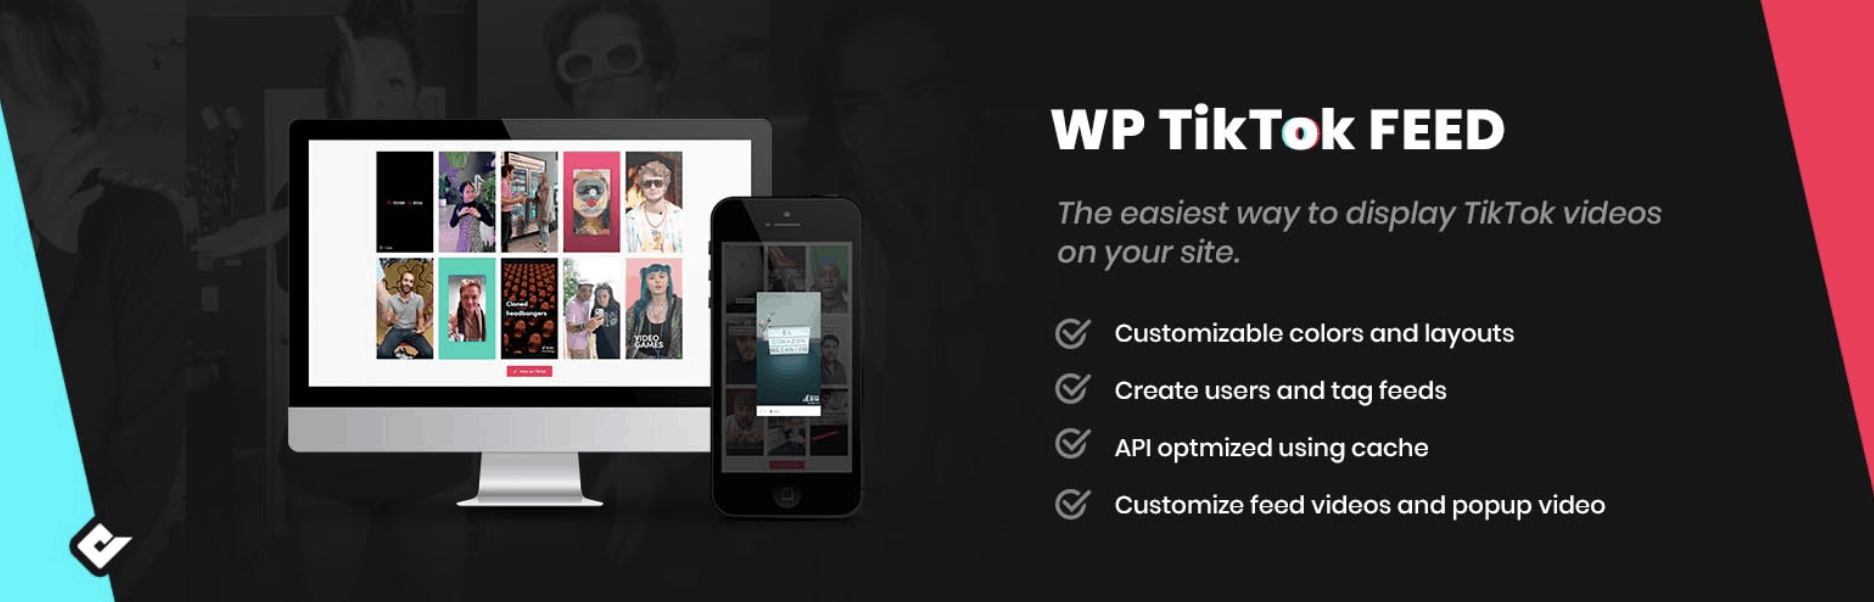 The WP TikTok Feed plugin.